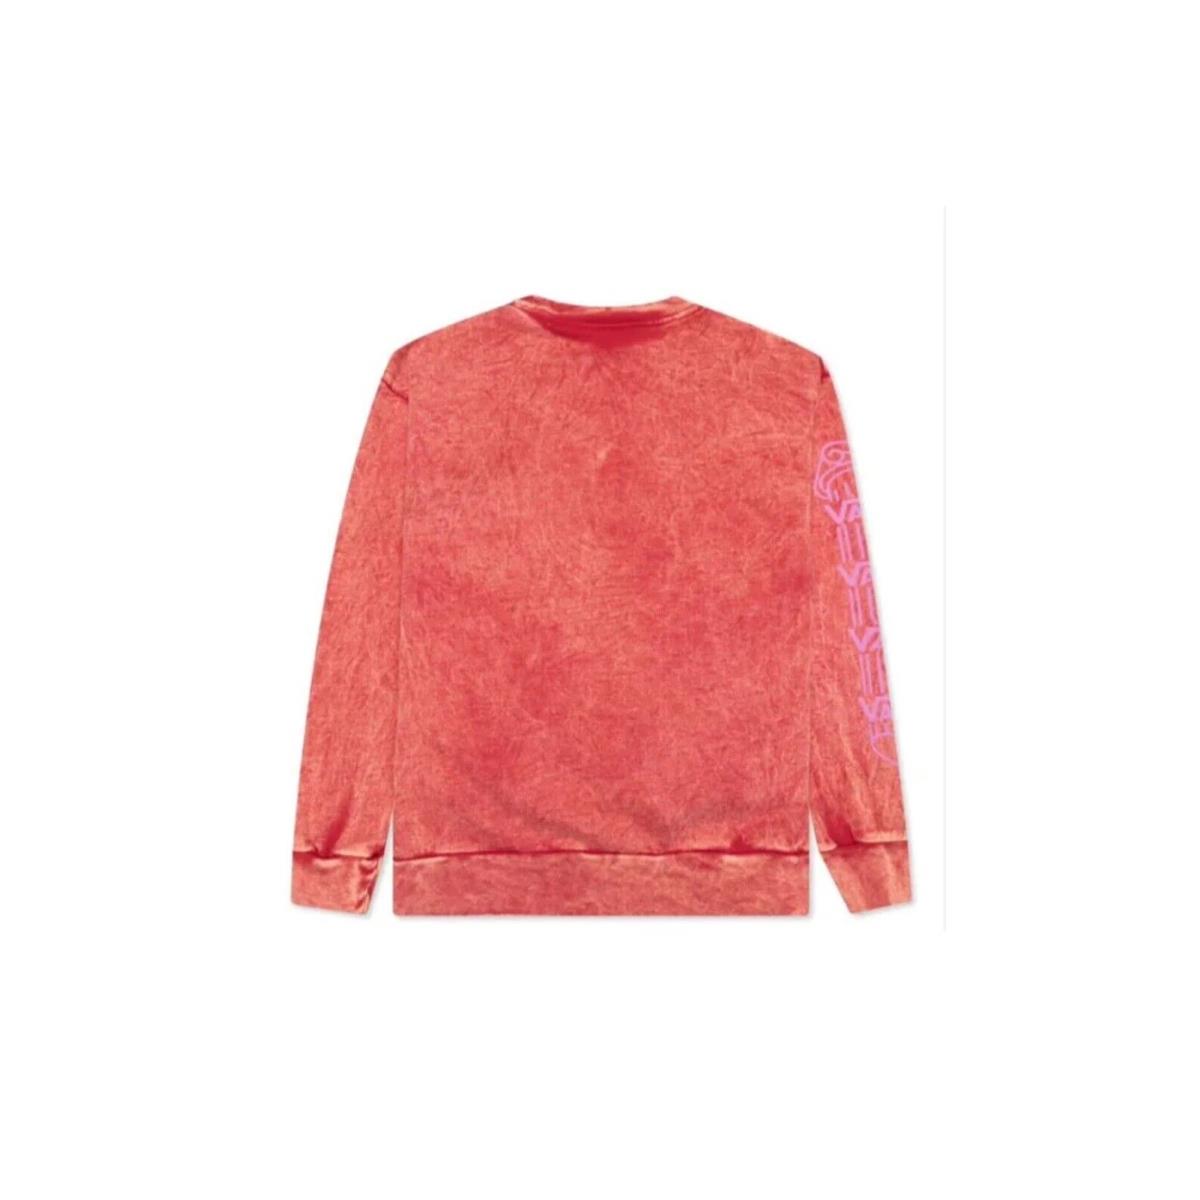 Vans Vault X Aries Women`s Crew Sweatshirt - Red Size Medium